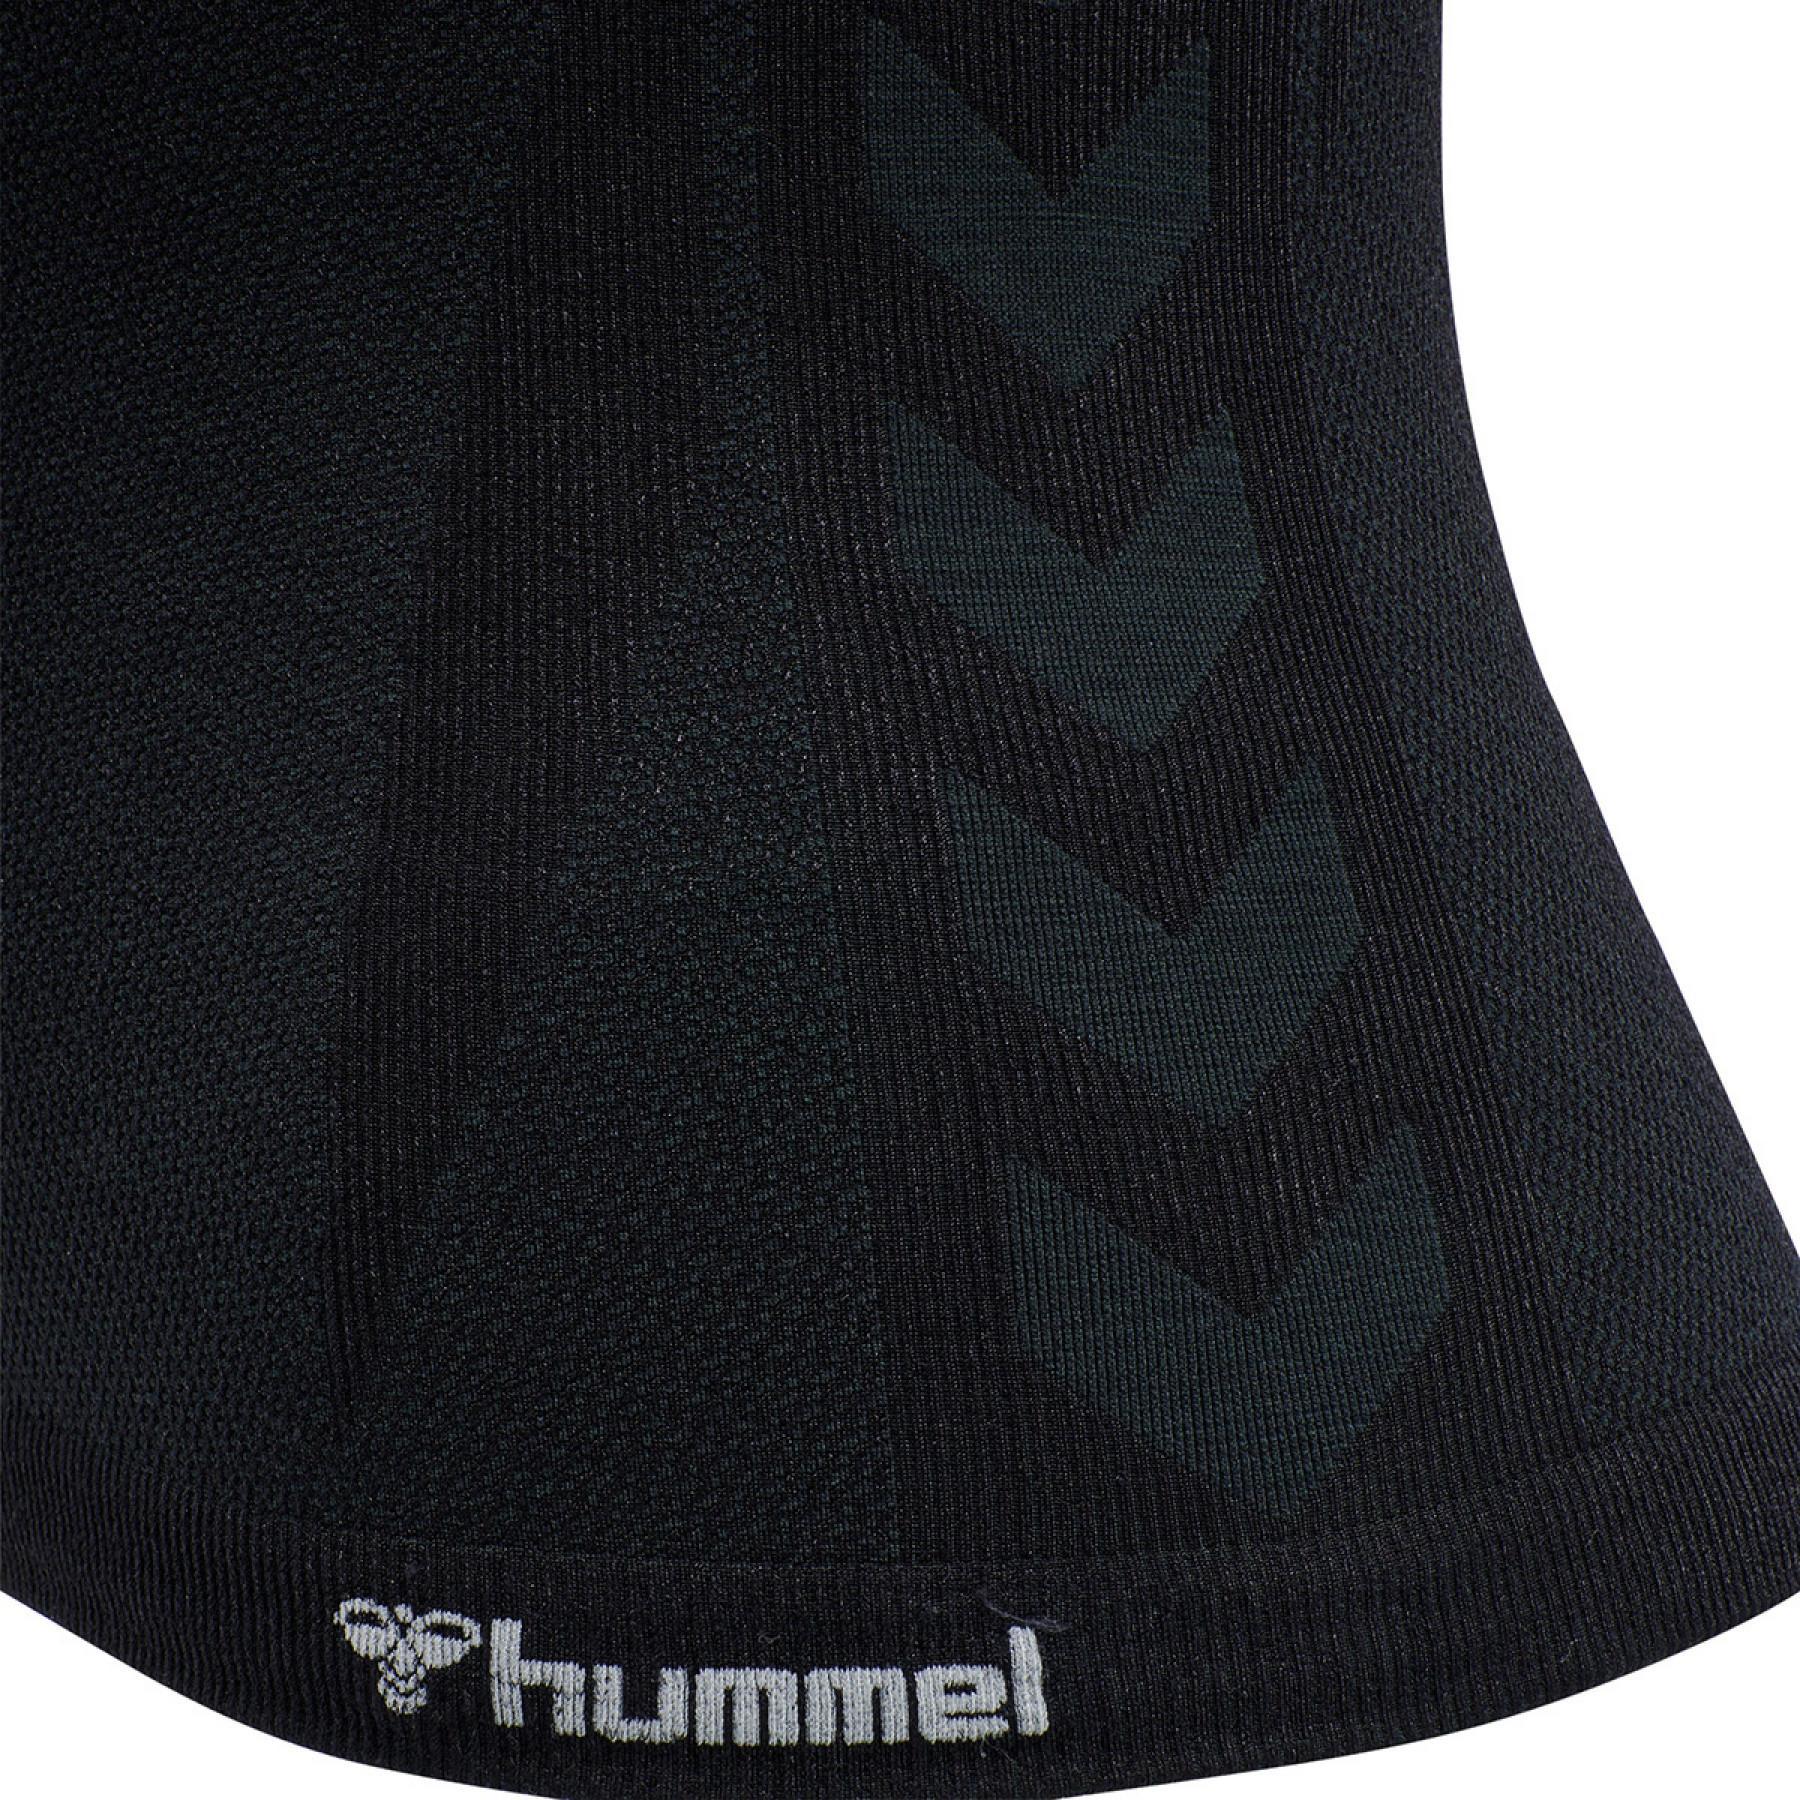 Camiseta de tirantes mujer Hummel hmlclea top